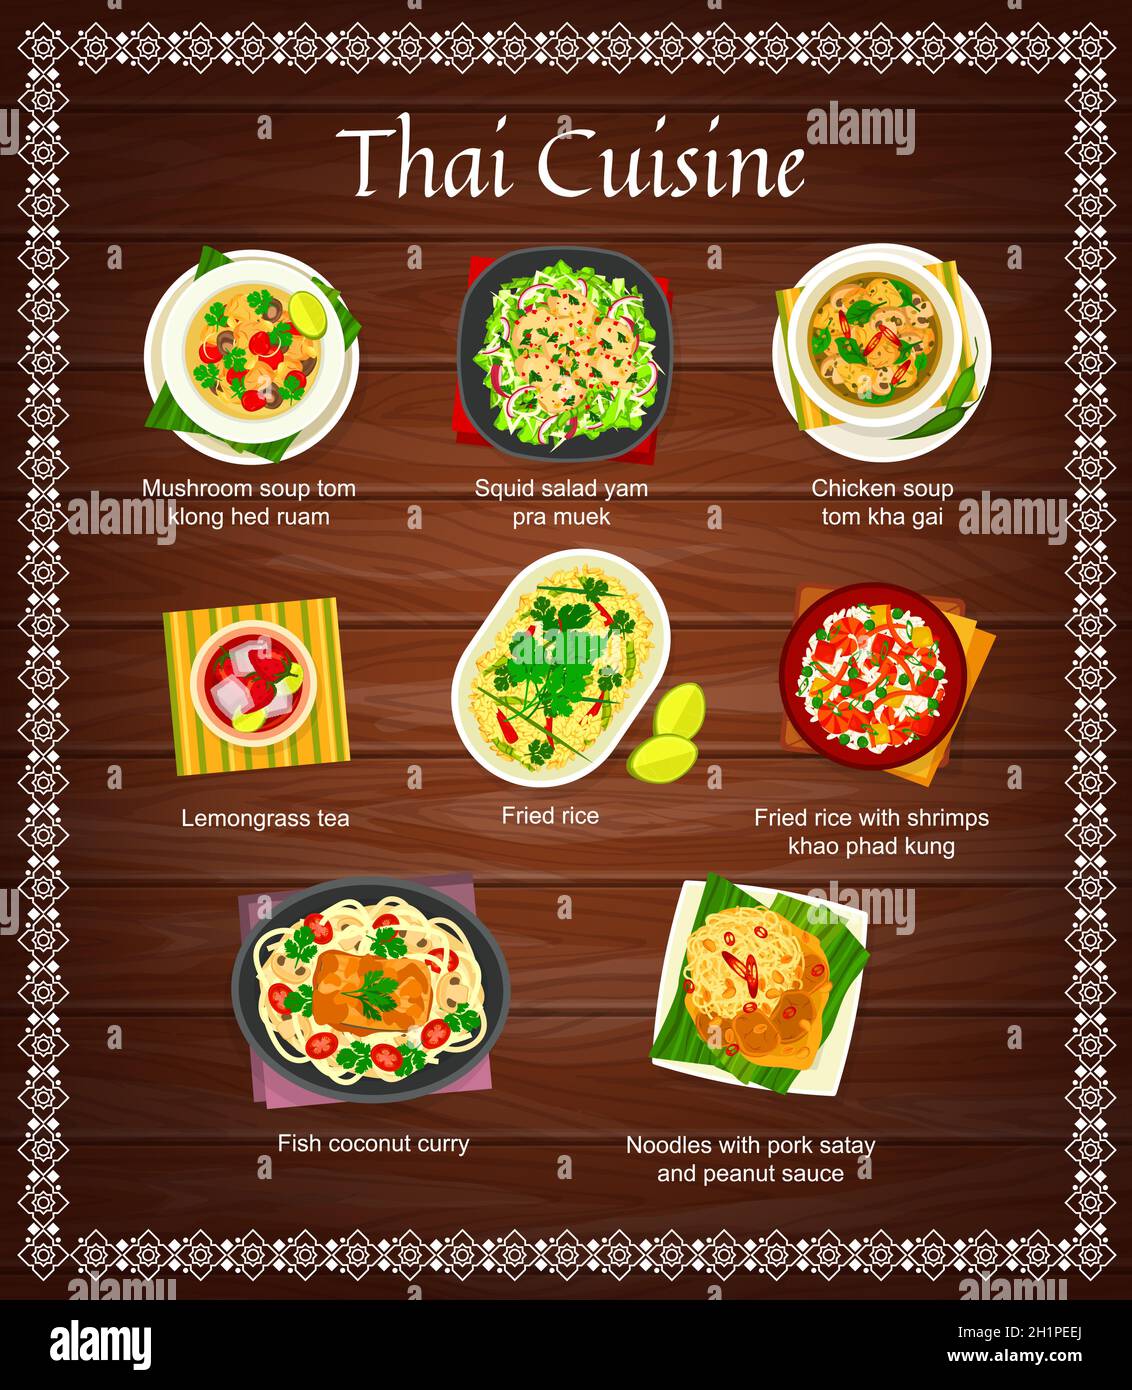 Thailändische Küche Vektor Tintenfisch Salat Yam pra Muek, Hühnersuppe tom Kha Gai und Zitronengras Tee. Gebratener Reis mit Garnelen khao phad Kung, Fisch-Kokosnusskuru, Stock Vektor